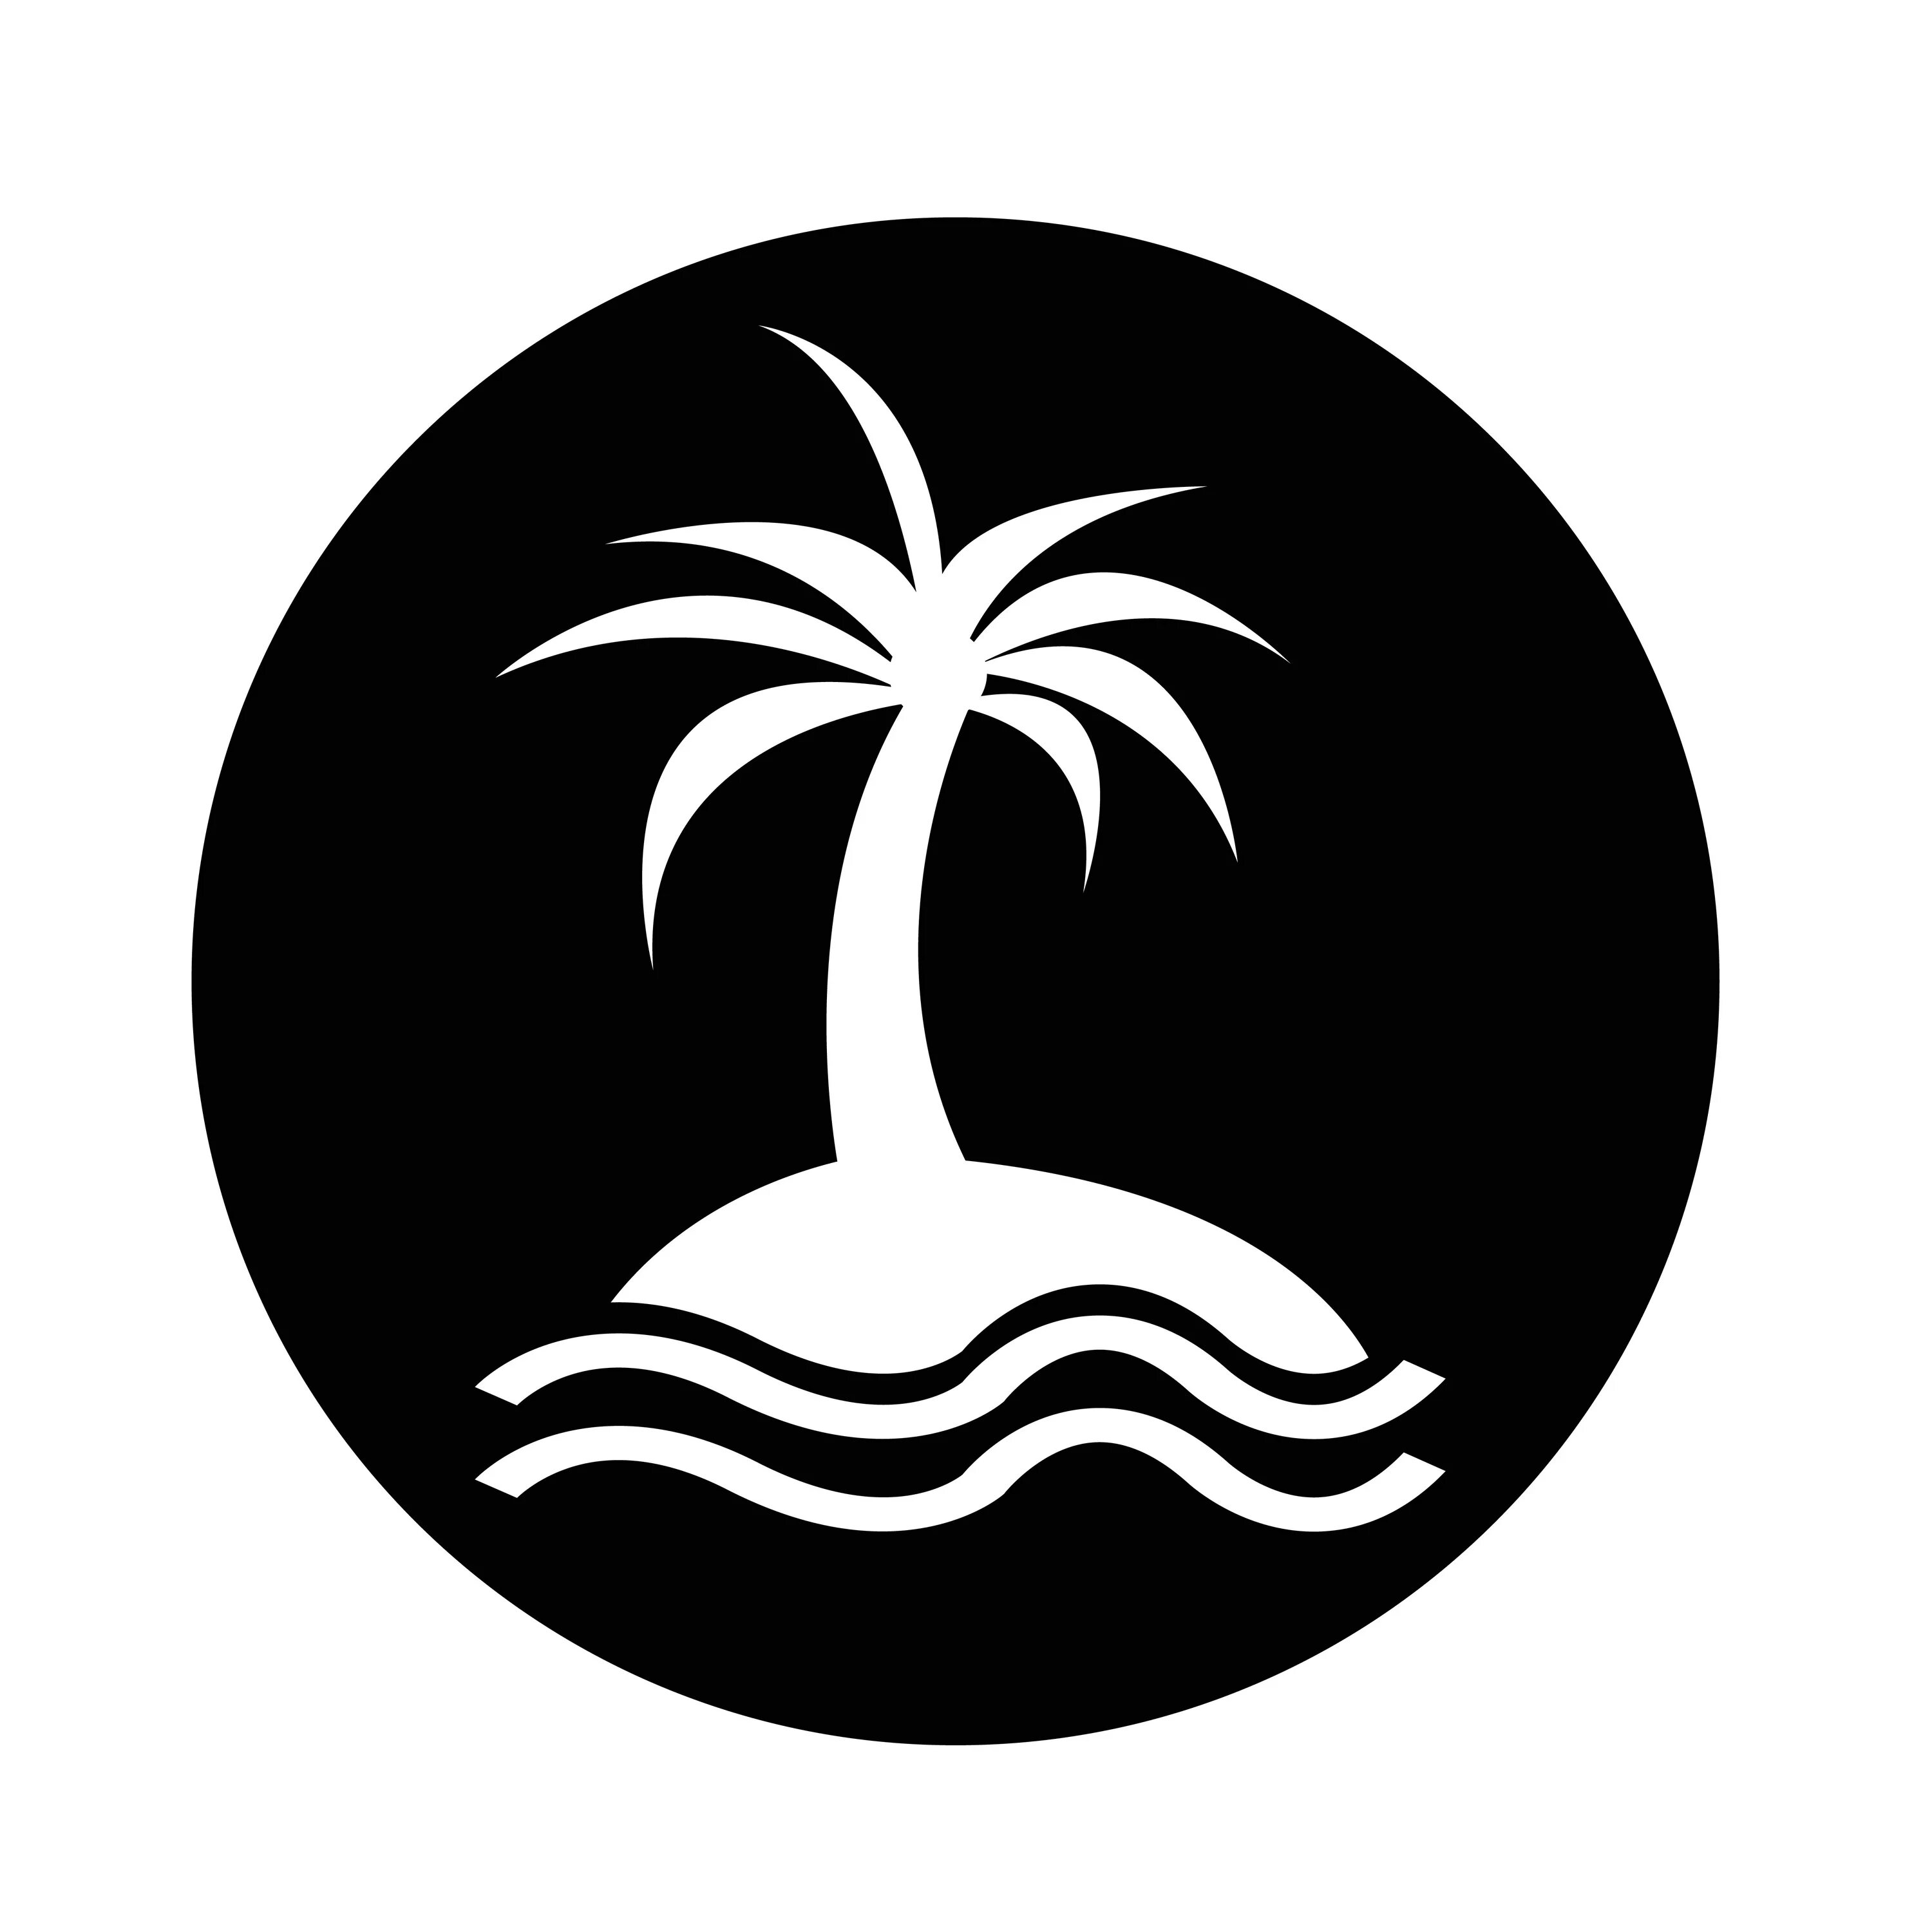 Значок острова. Пиктограмма остров. Остров и Пальма значок. Иконка острова с пальмой. Island значок